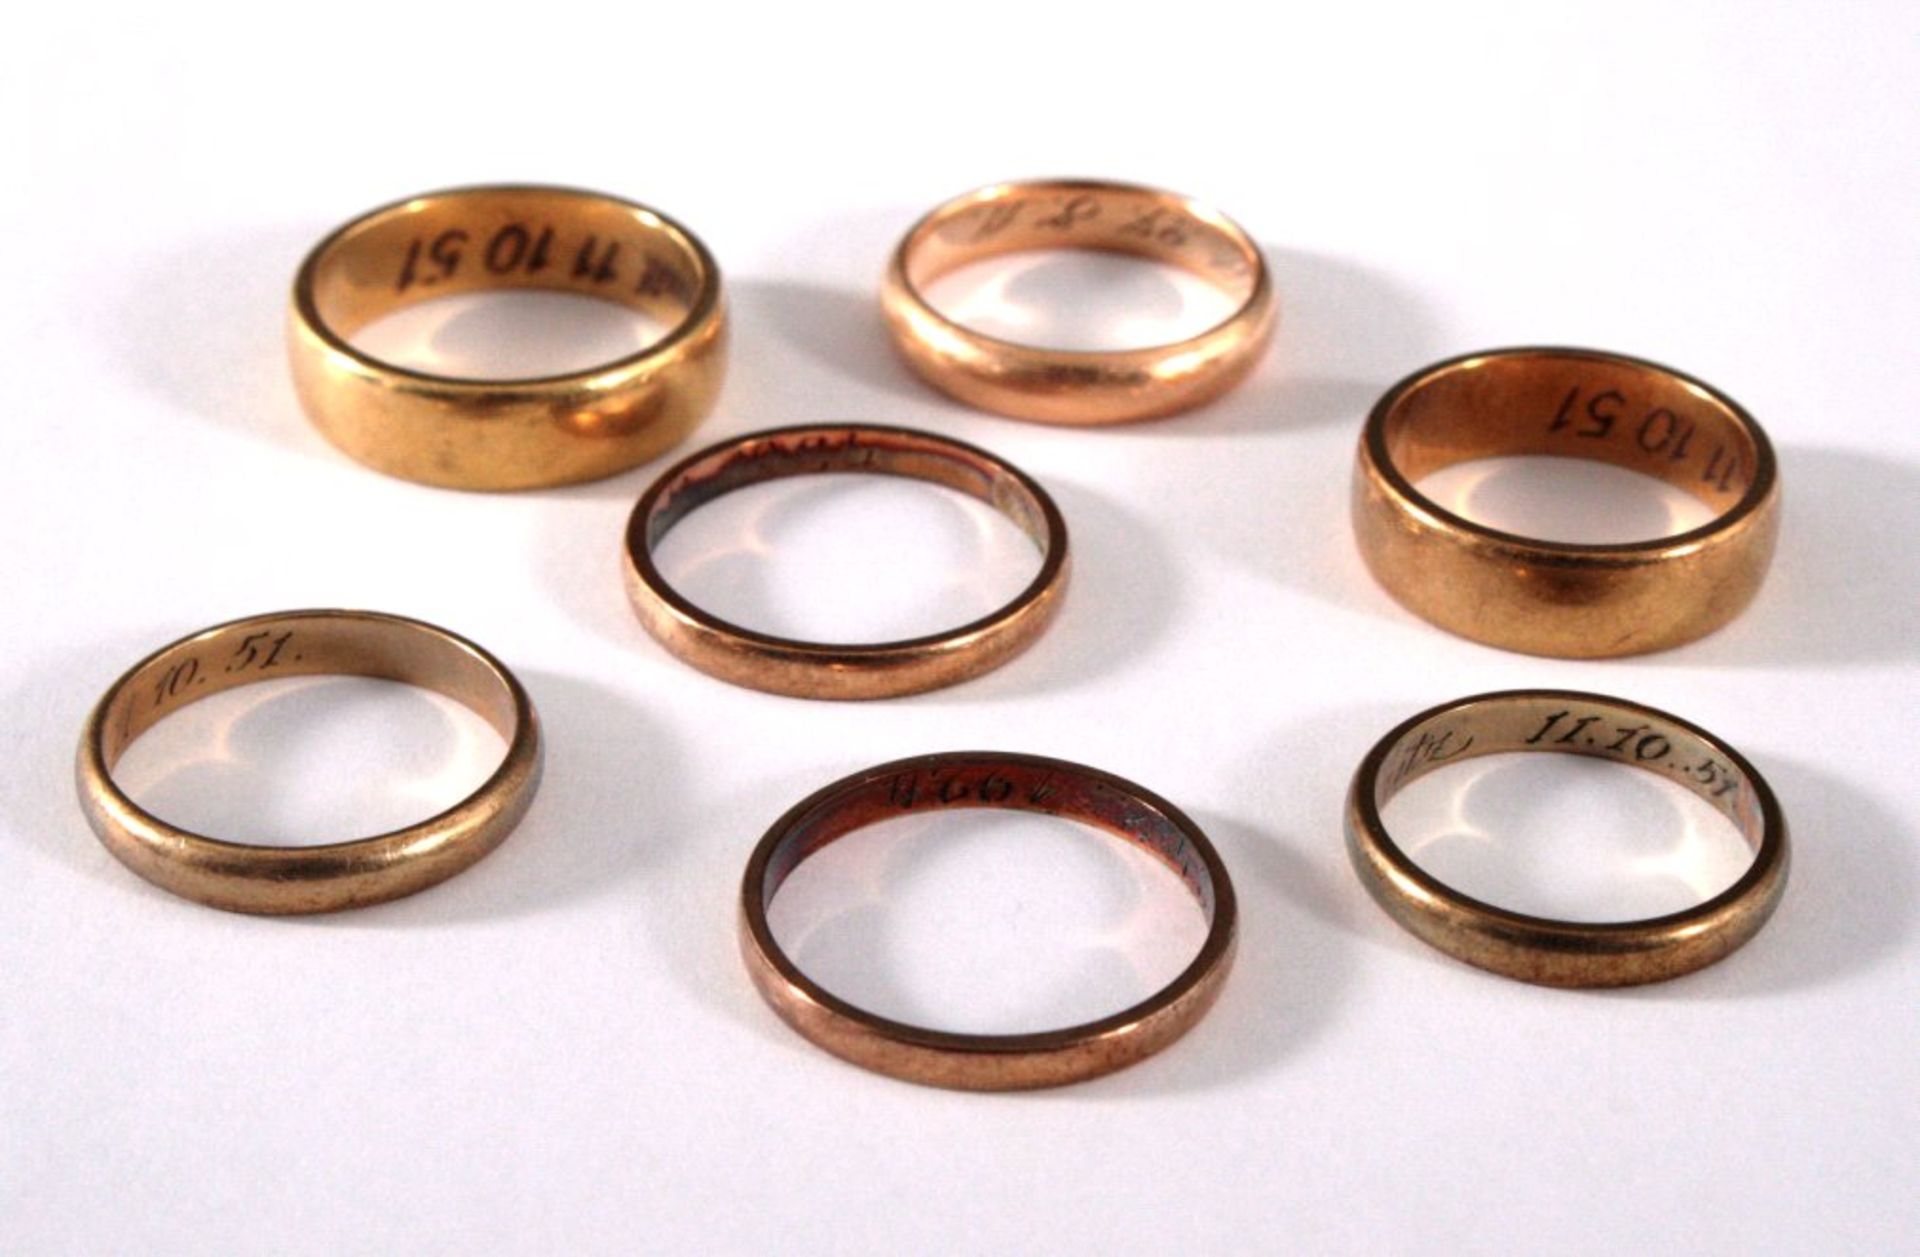 Konvolut GoldschmuckBestehend aus 7 Ringen in unterschiedlichen Größen.4 Ringe aus 8 kt Gelbgold,